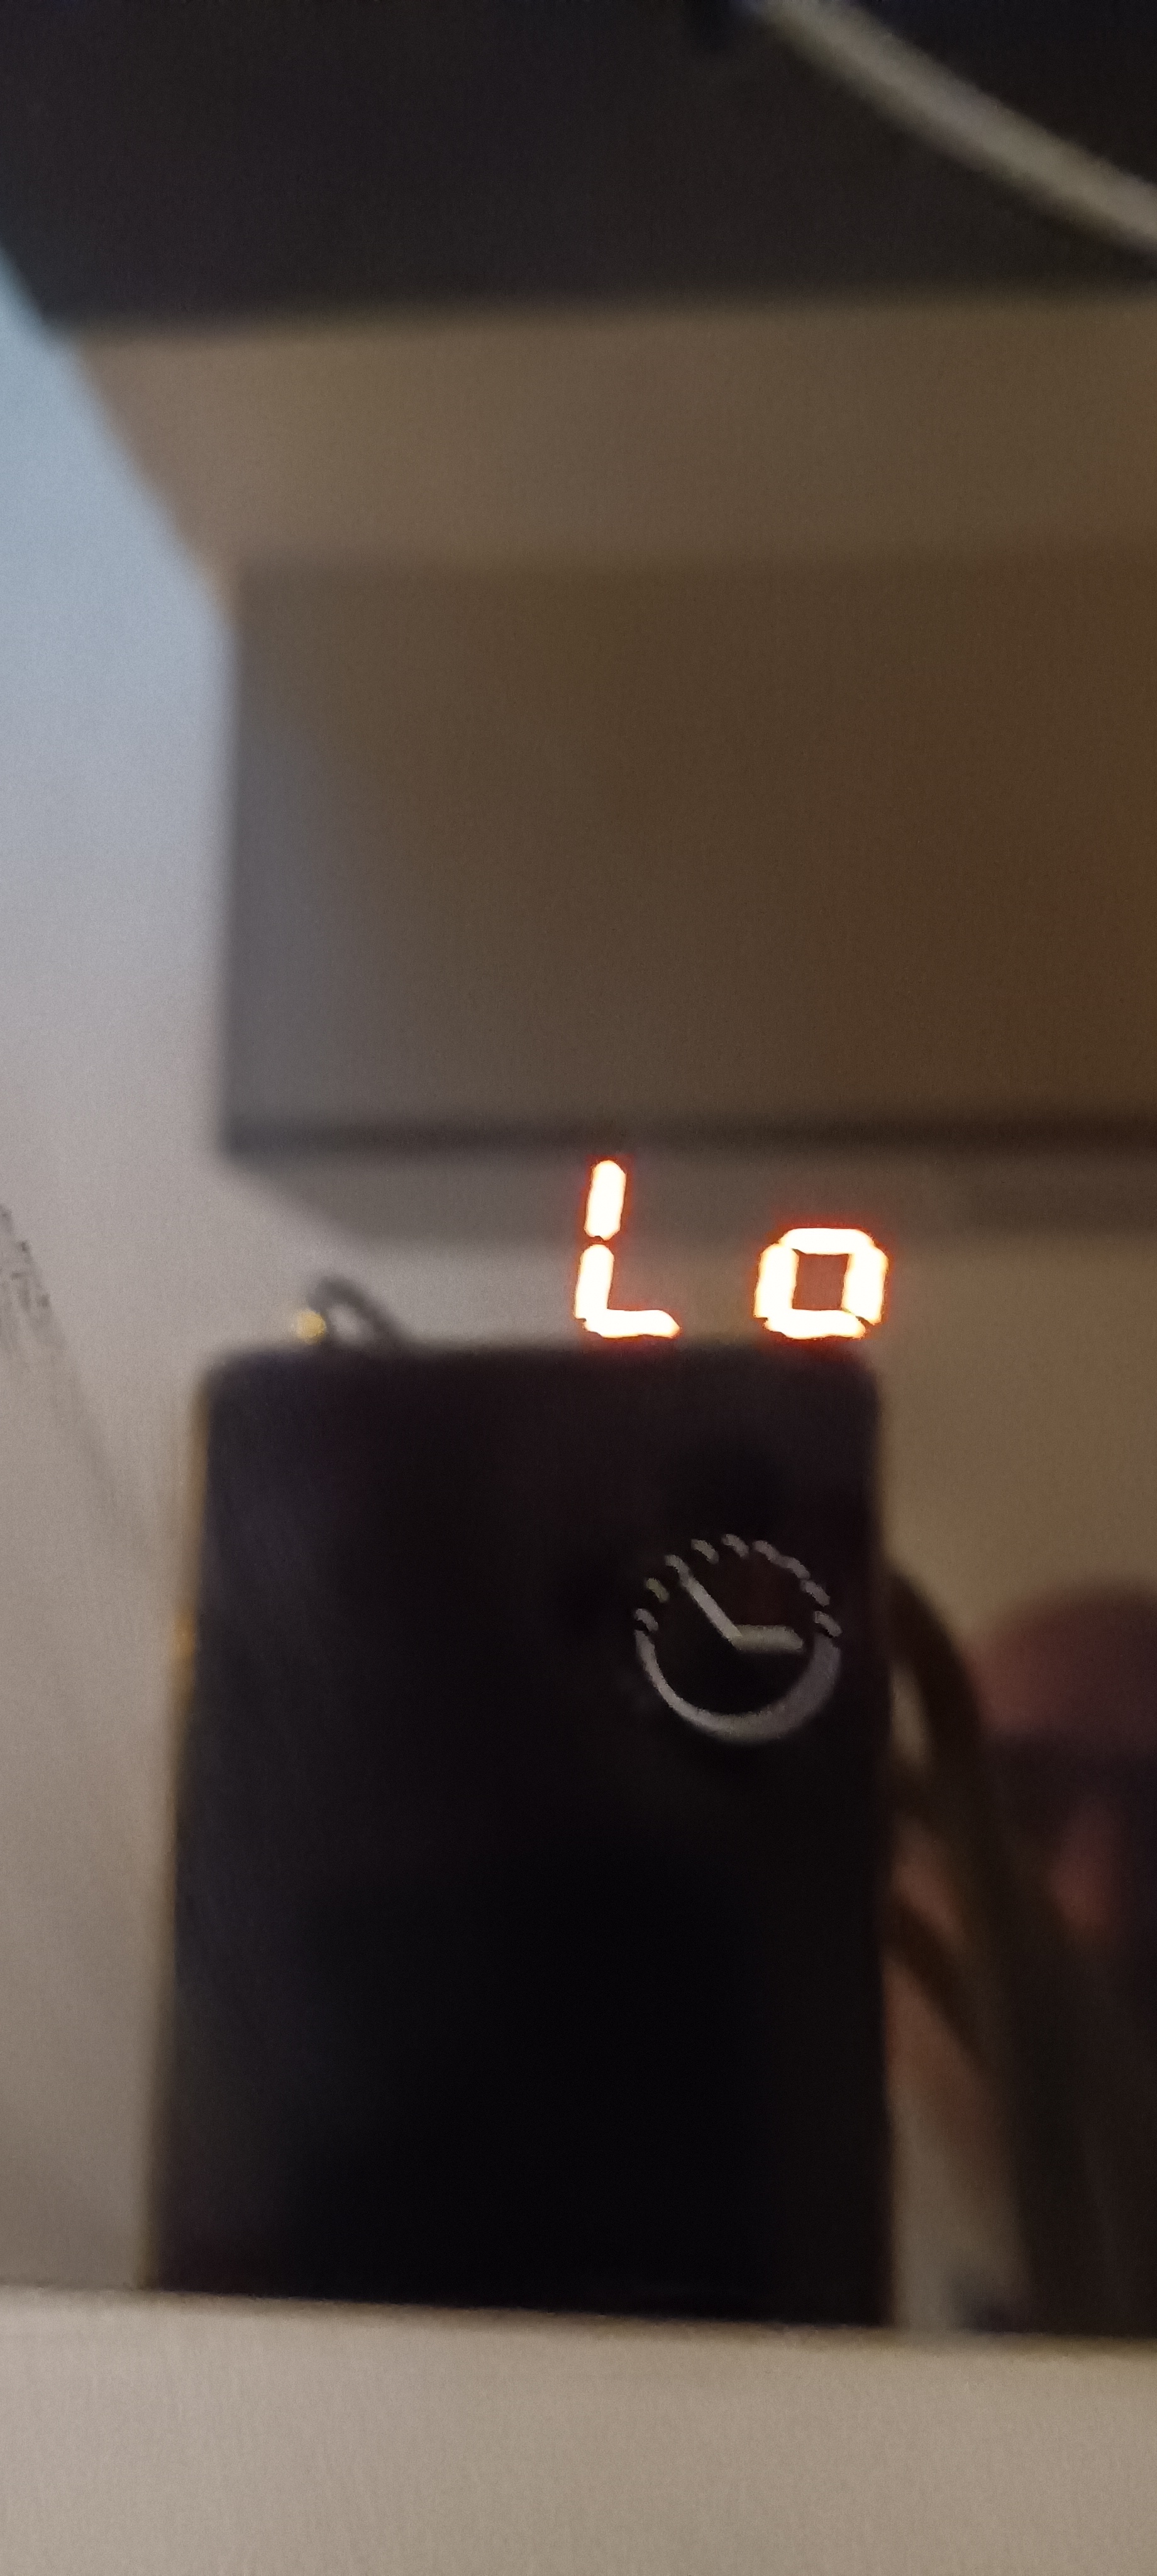 Hej, mit bord giver denne fejlkode "Lo", og jeg kan ikke finde information om, hvad det ...